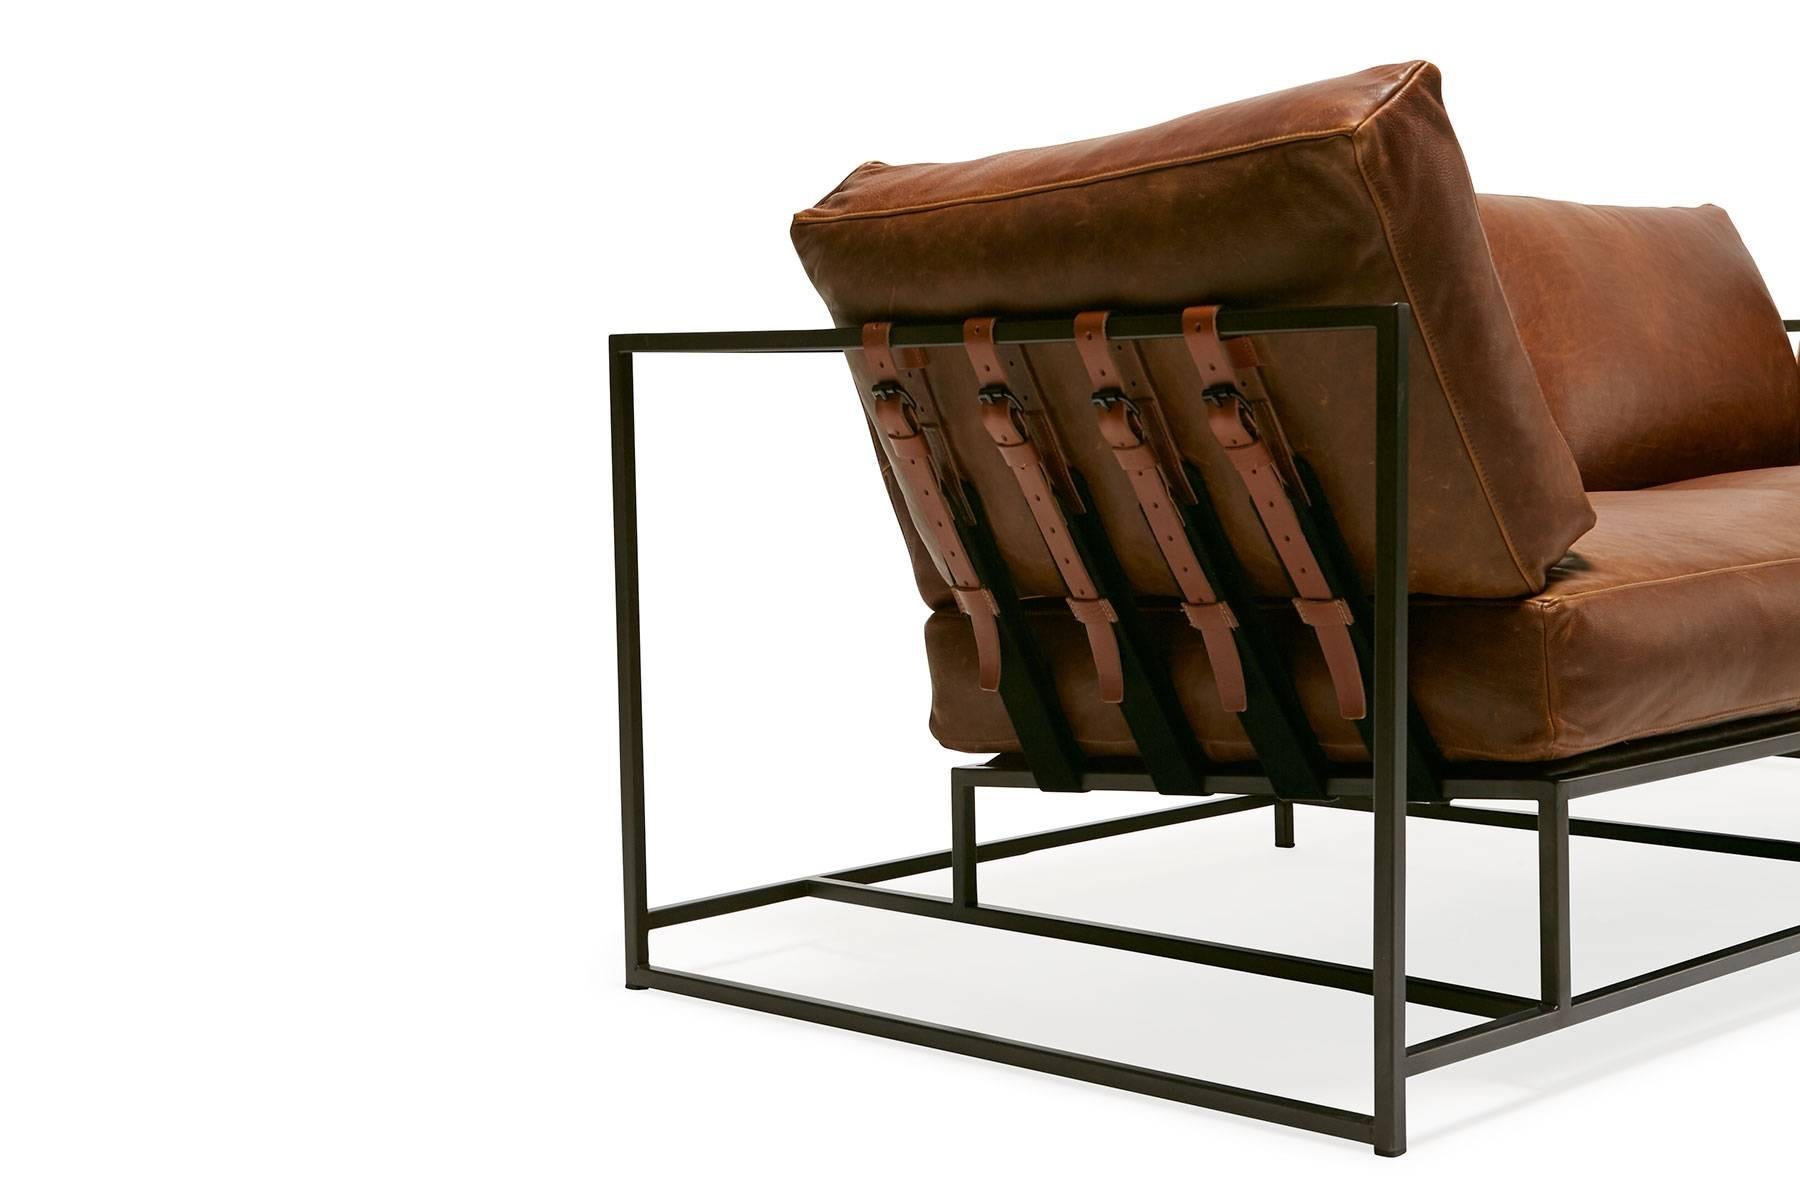 Le canapé deux places Inheritance de Stephen Kenn est aussi confortable qu'il est unique. Le design se caractérise par une construction apparente composée de trois éléments - un cadre en acier, un rembourrage en peluche et des ceintures de soutien.